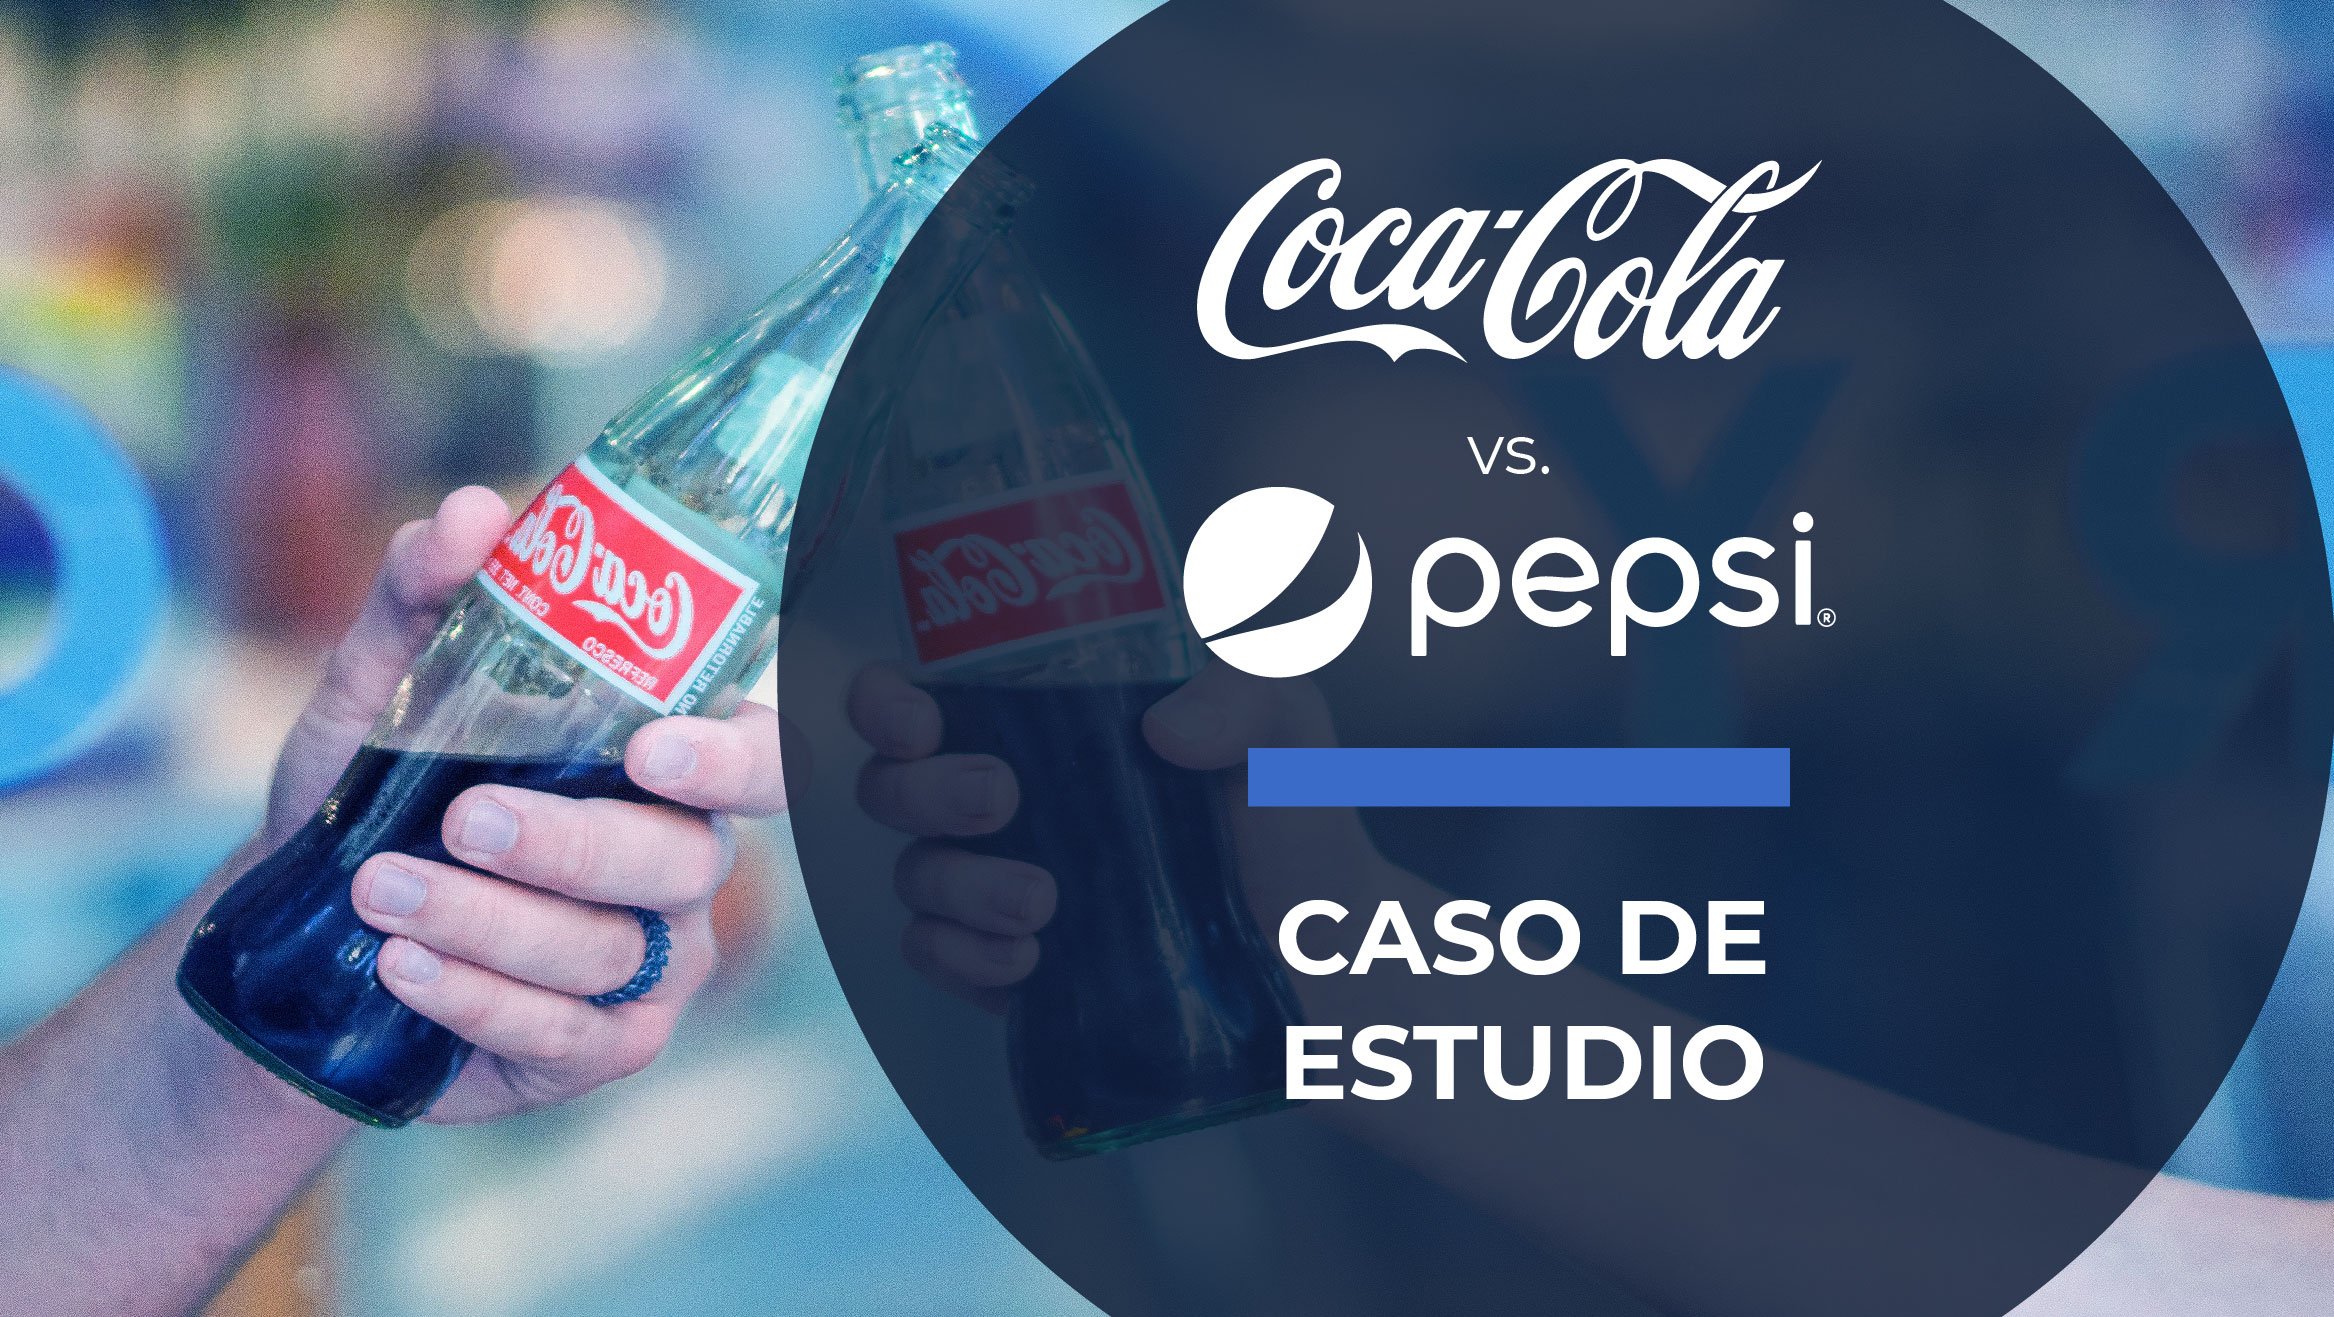 Case study Coca Cola vs Pepsi: historical rivalry